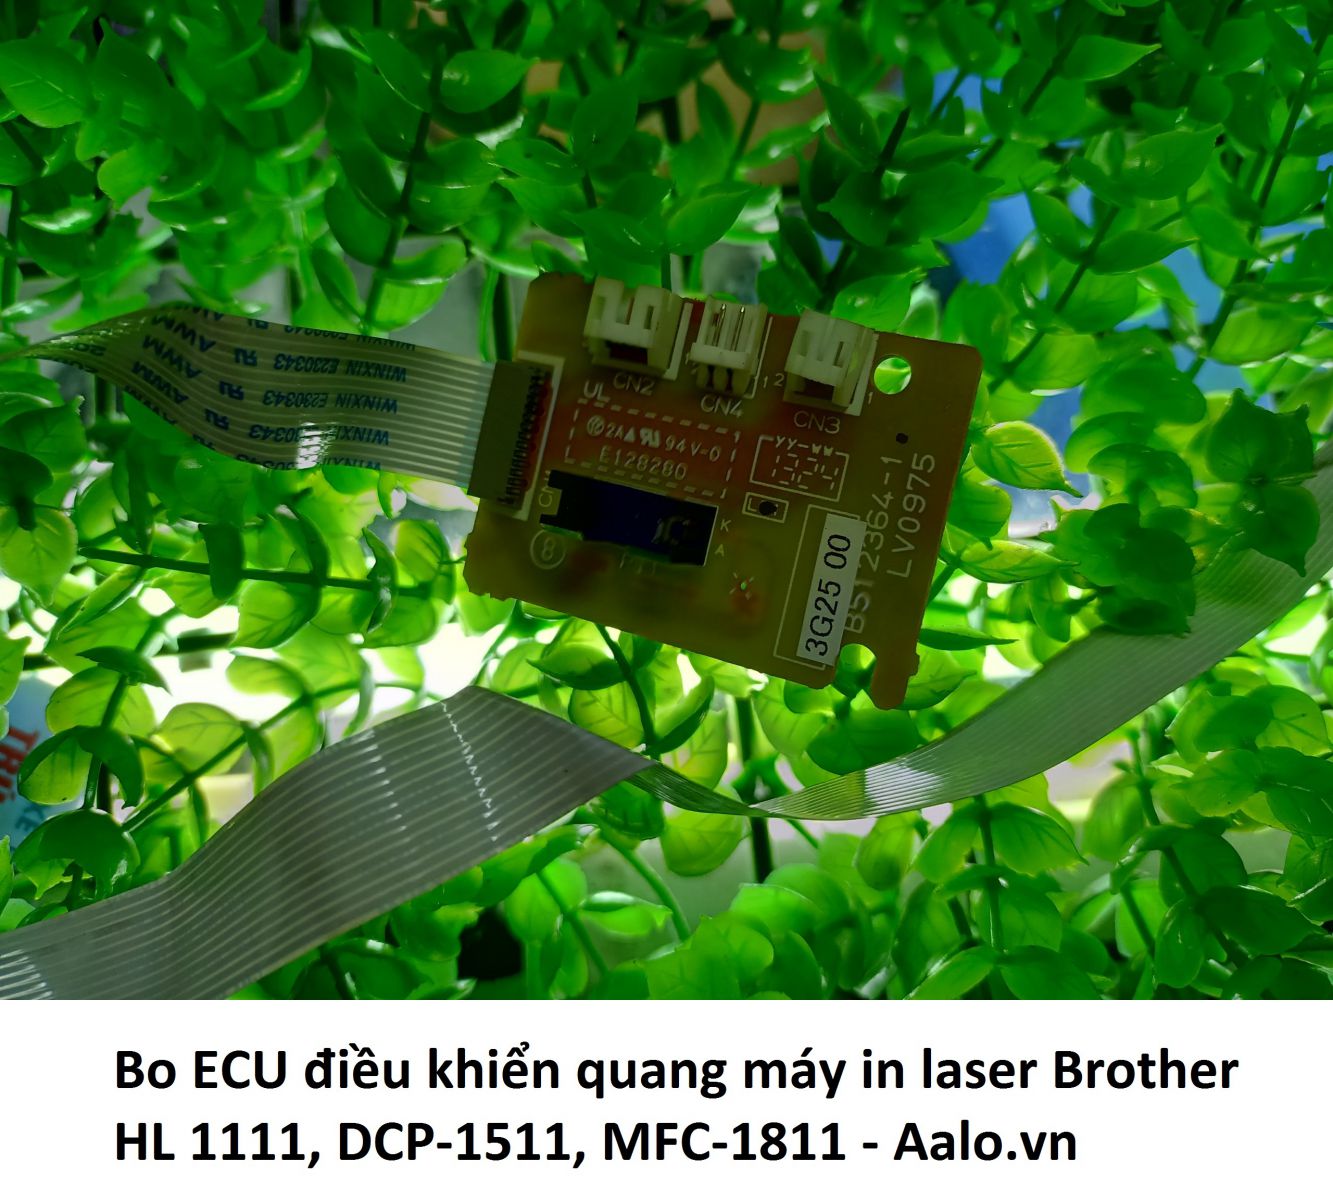 Bo ECU điều khiển quang máy in laser Brother HL 1111, DCP-1511, MFC-1811 - Aalo.vn